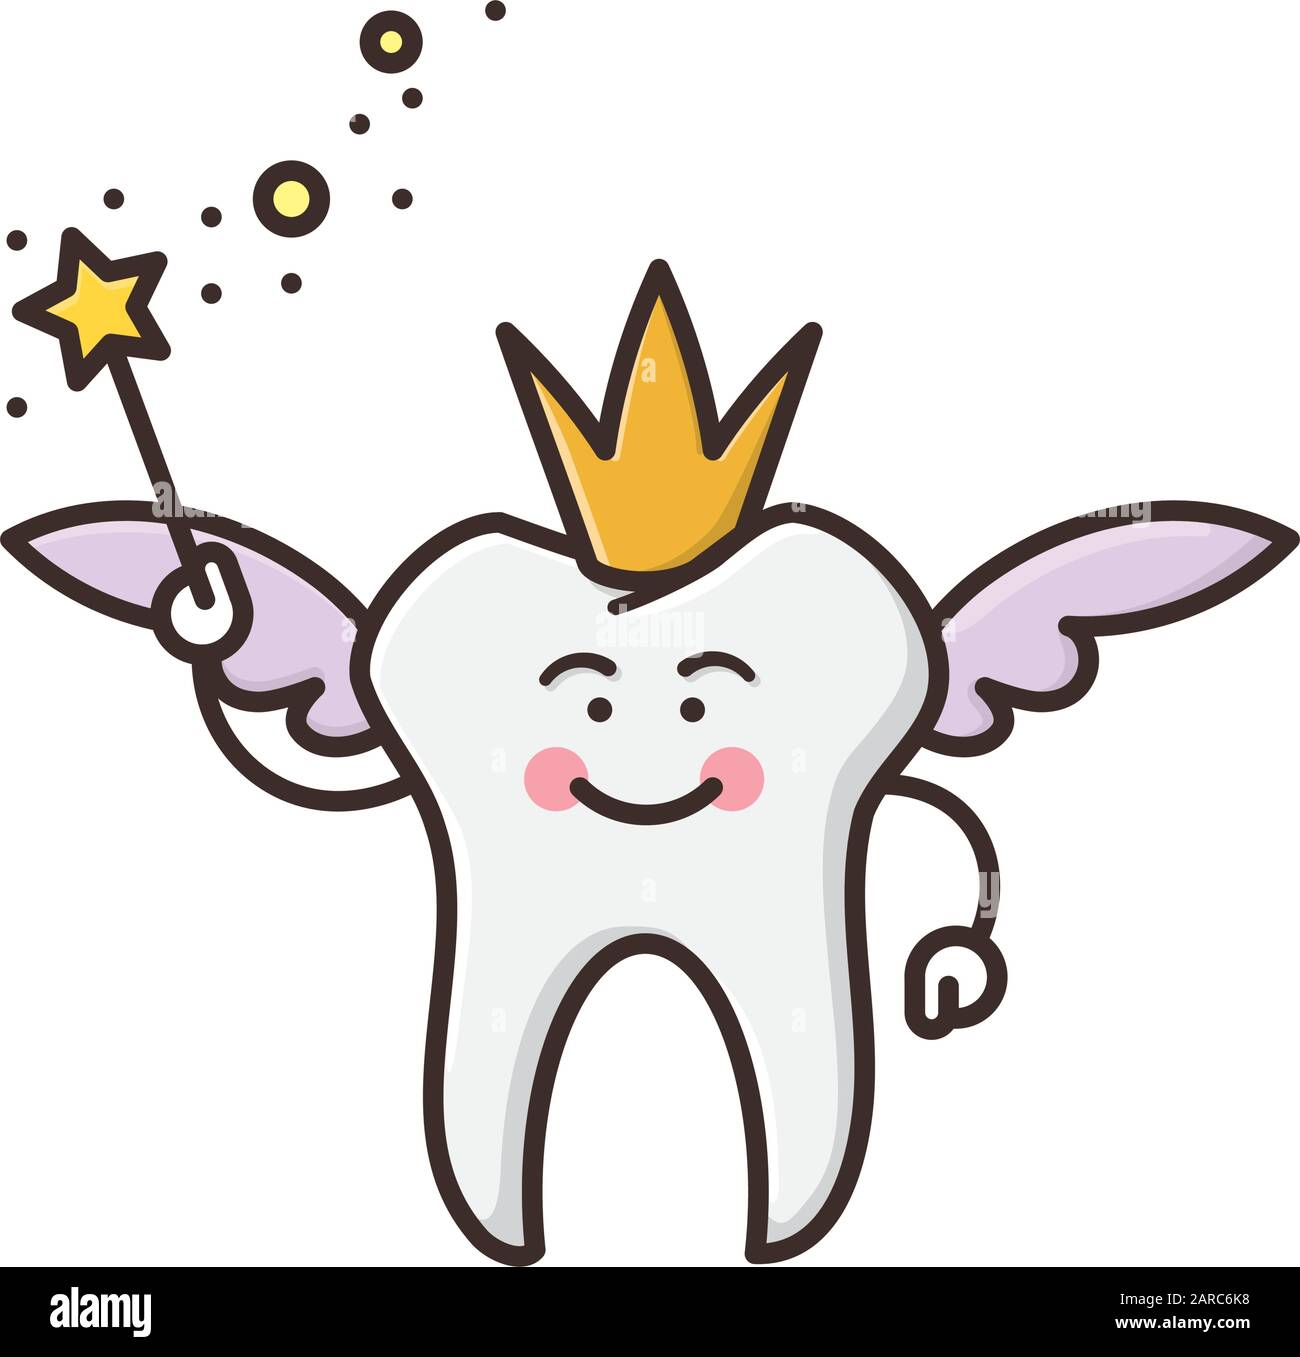 Fata del dente con bacchetta magica immagine vettoriale isolata per ToothFairyDay il febbraio 28th. Illustrazione Vettoriale